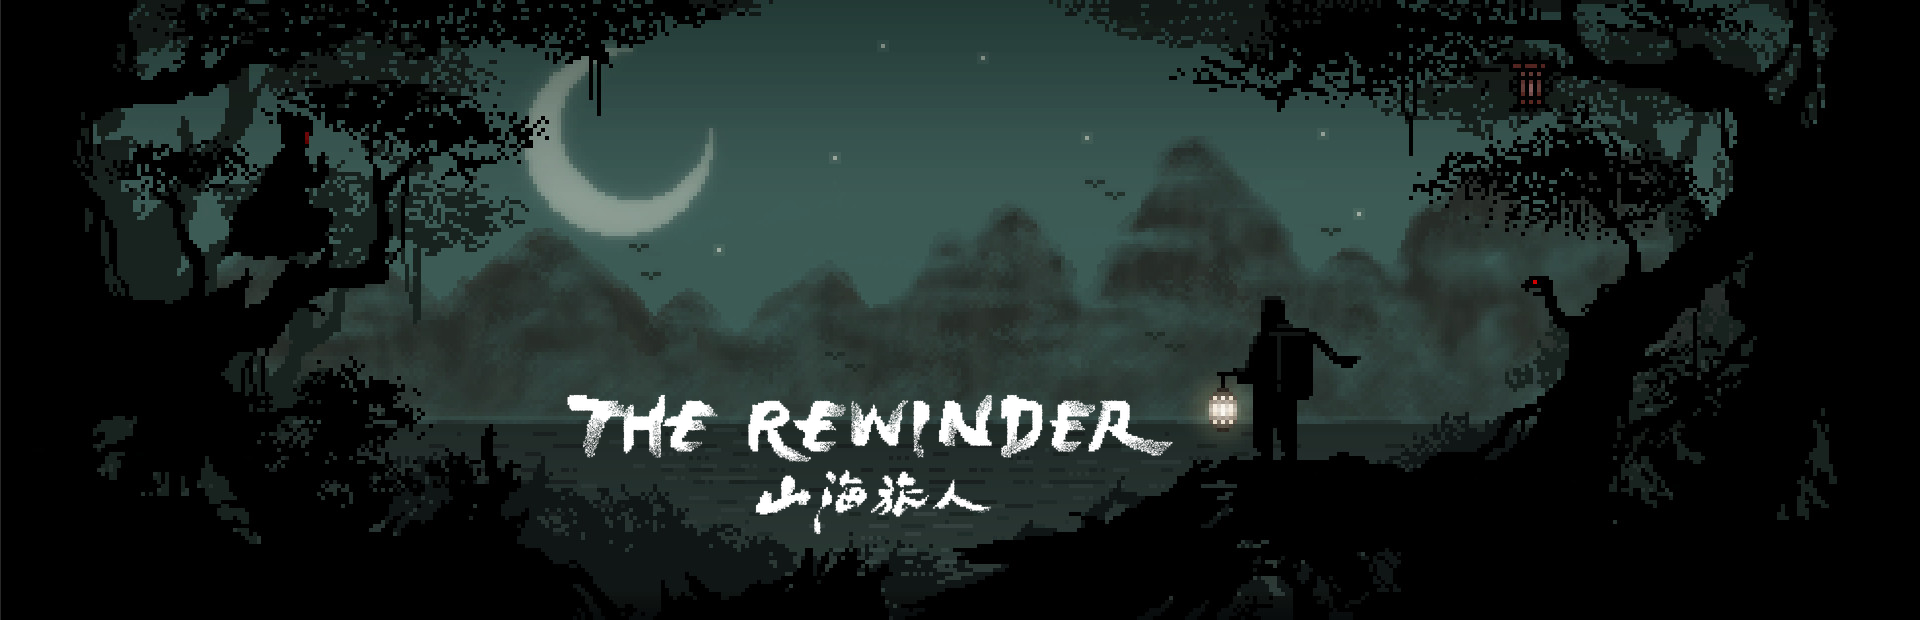 دانلود بازی The Rewinder برای پی سی | گیمباتو